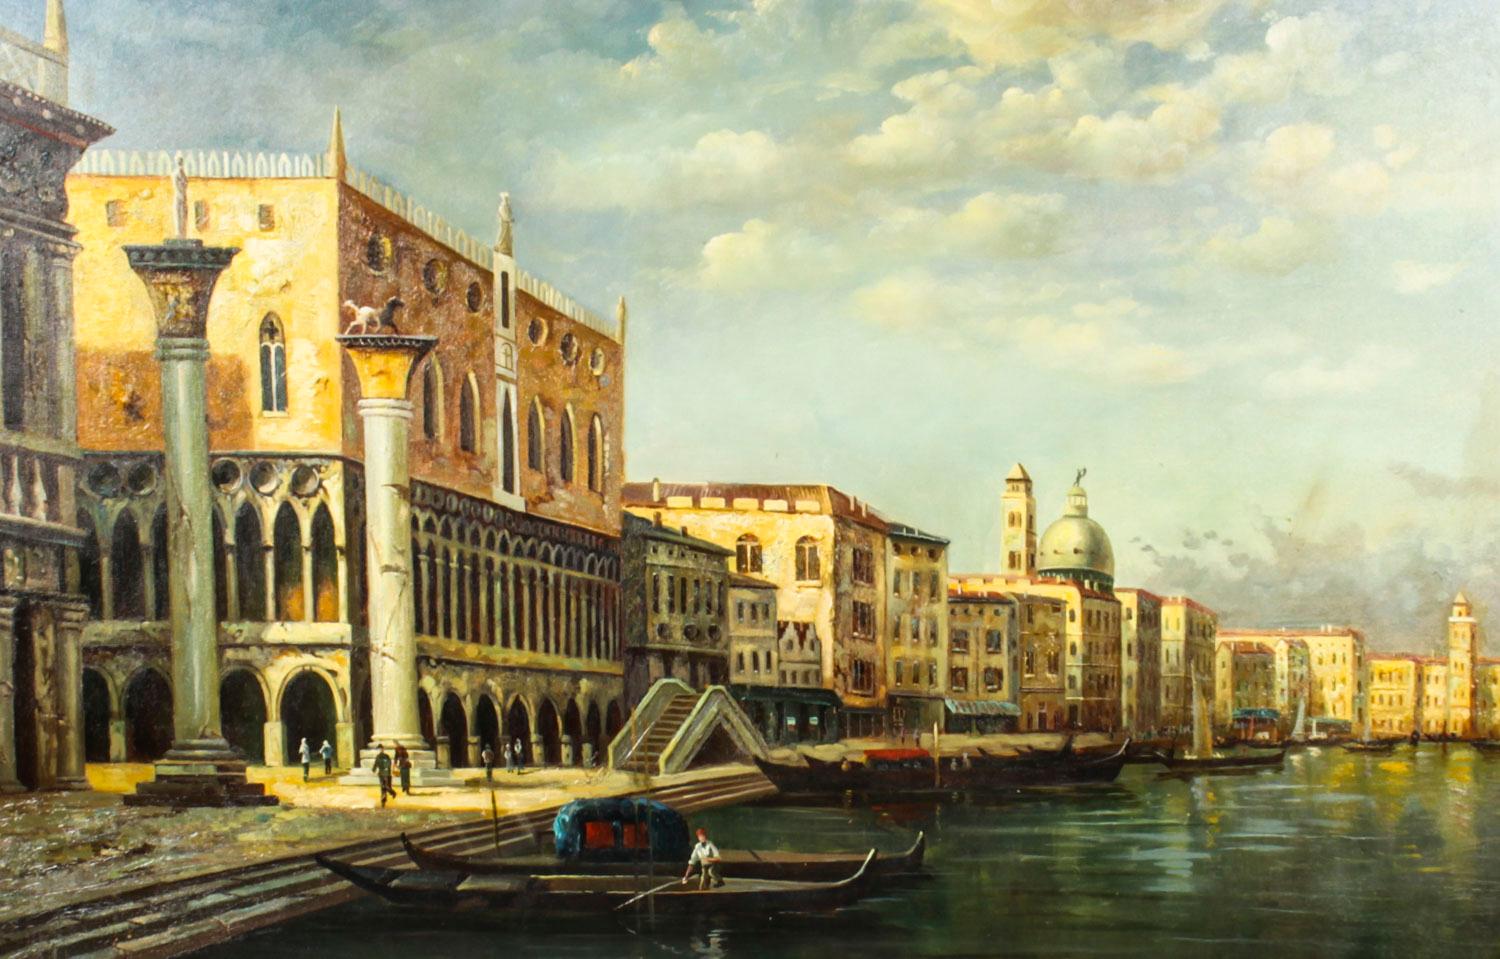 Une belle peinture à l'huile sur toile représentant la vue du palais des Doges et de la place Saint-Marc à Venise, datant du milieu du XXe siècle.

Le tableau offre une vue magnifique sur le Grand Canal, la place Saint-Marc, le palais des Doges et